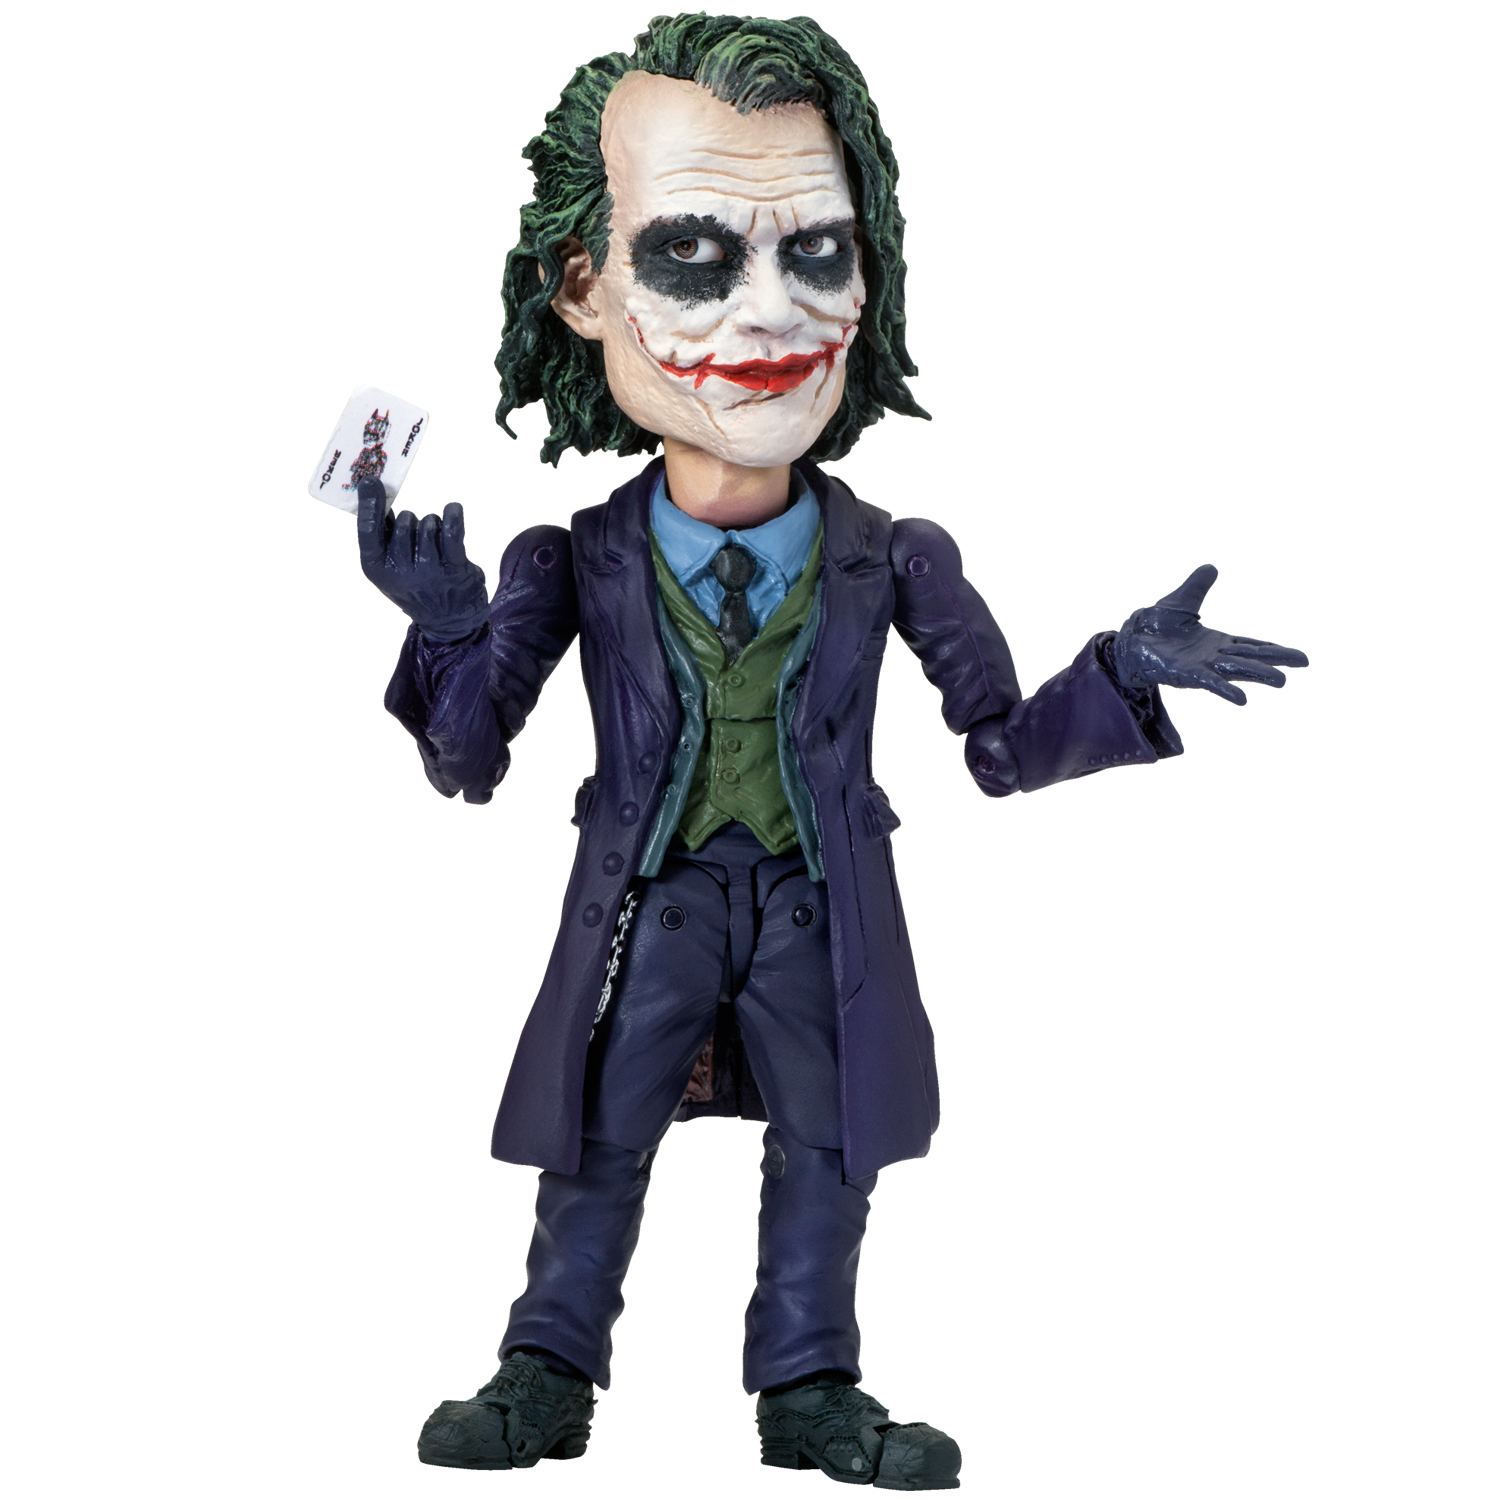 Toys Rocka! The Dark Knight: The Joker